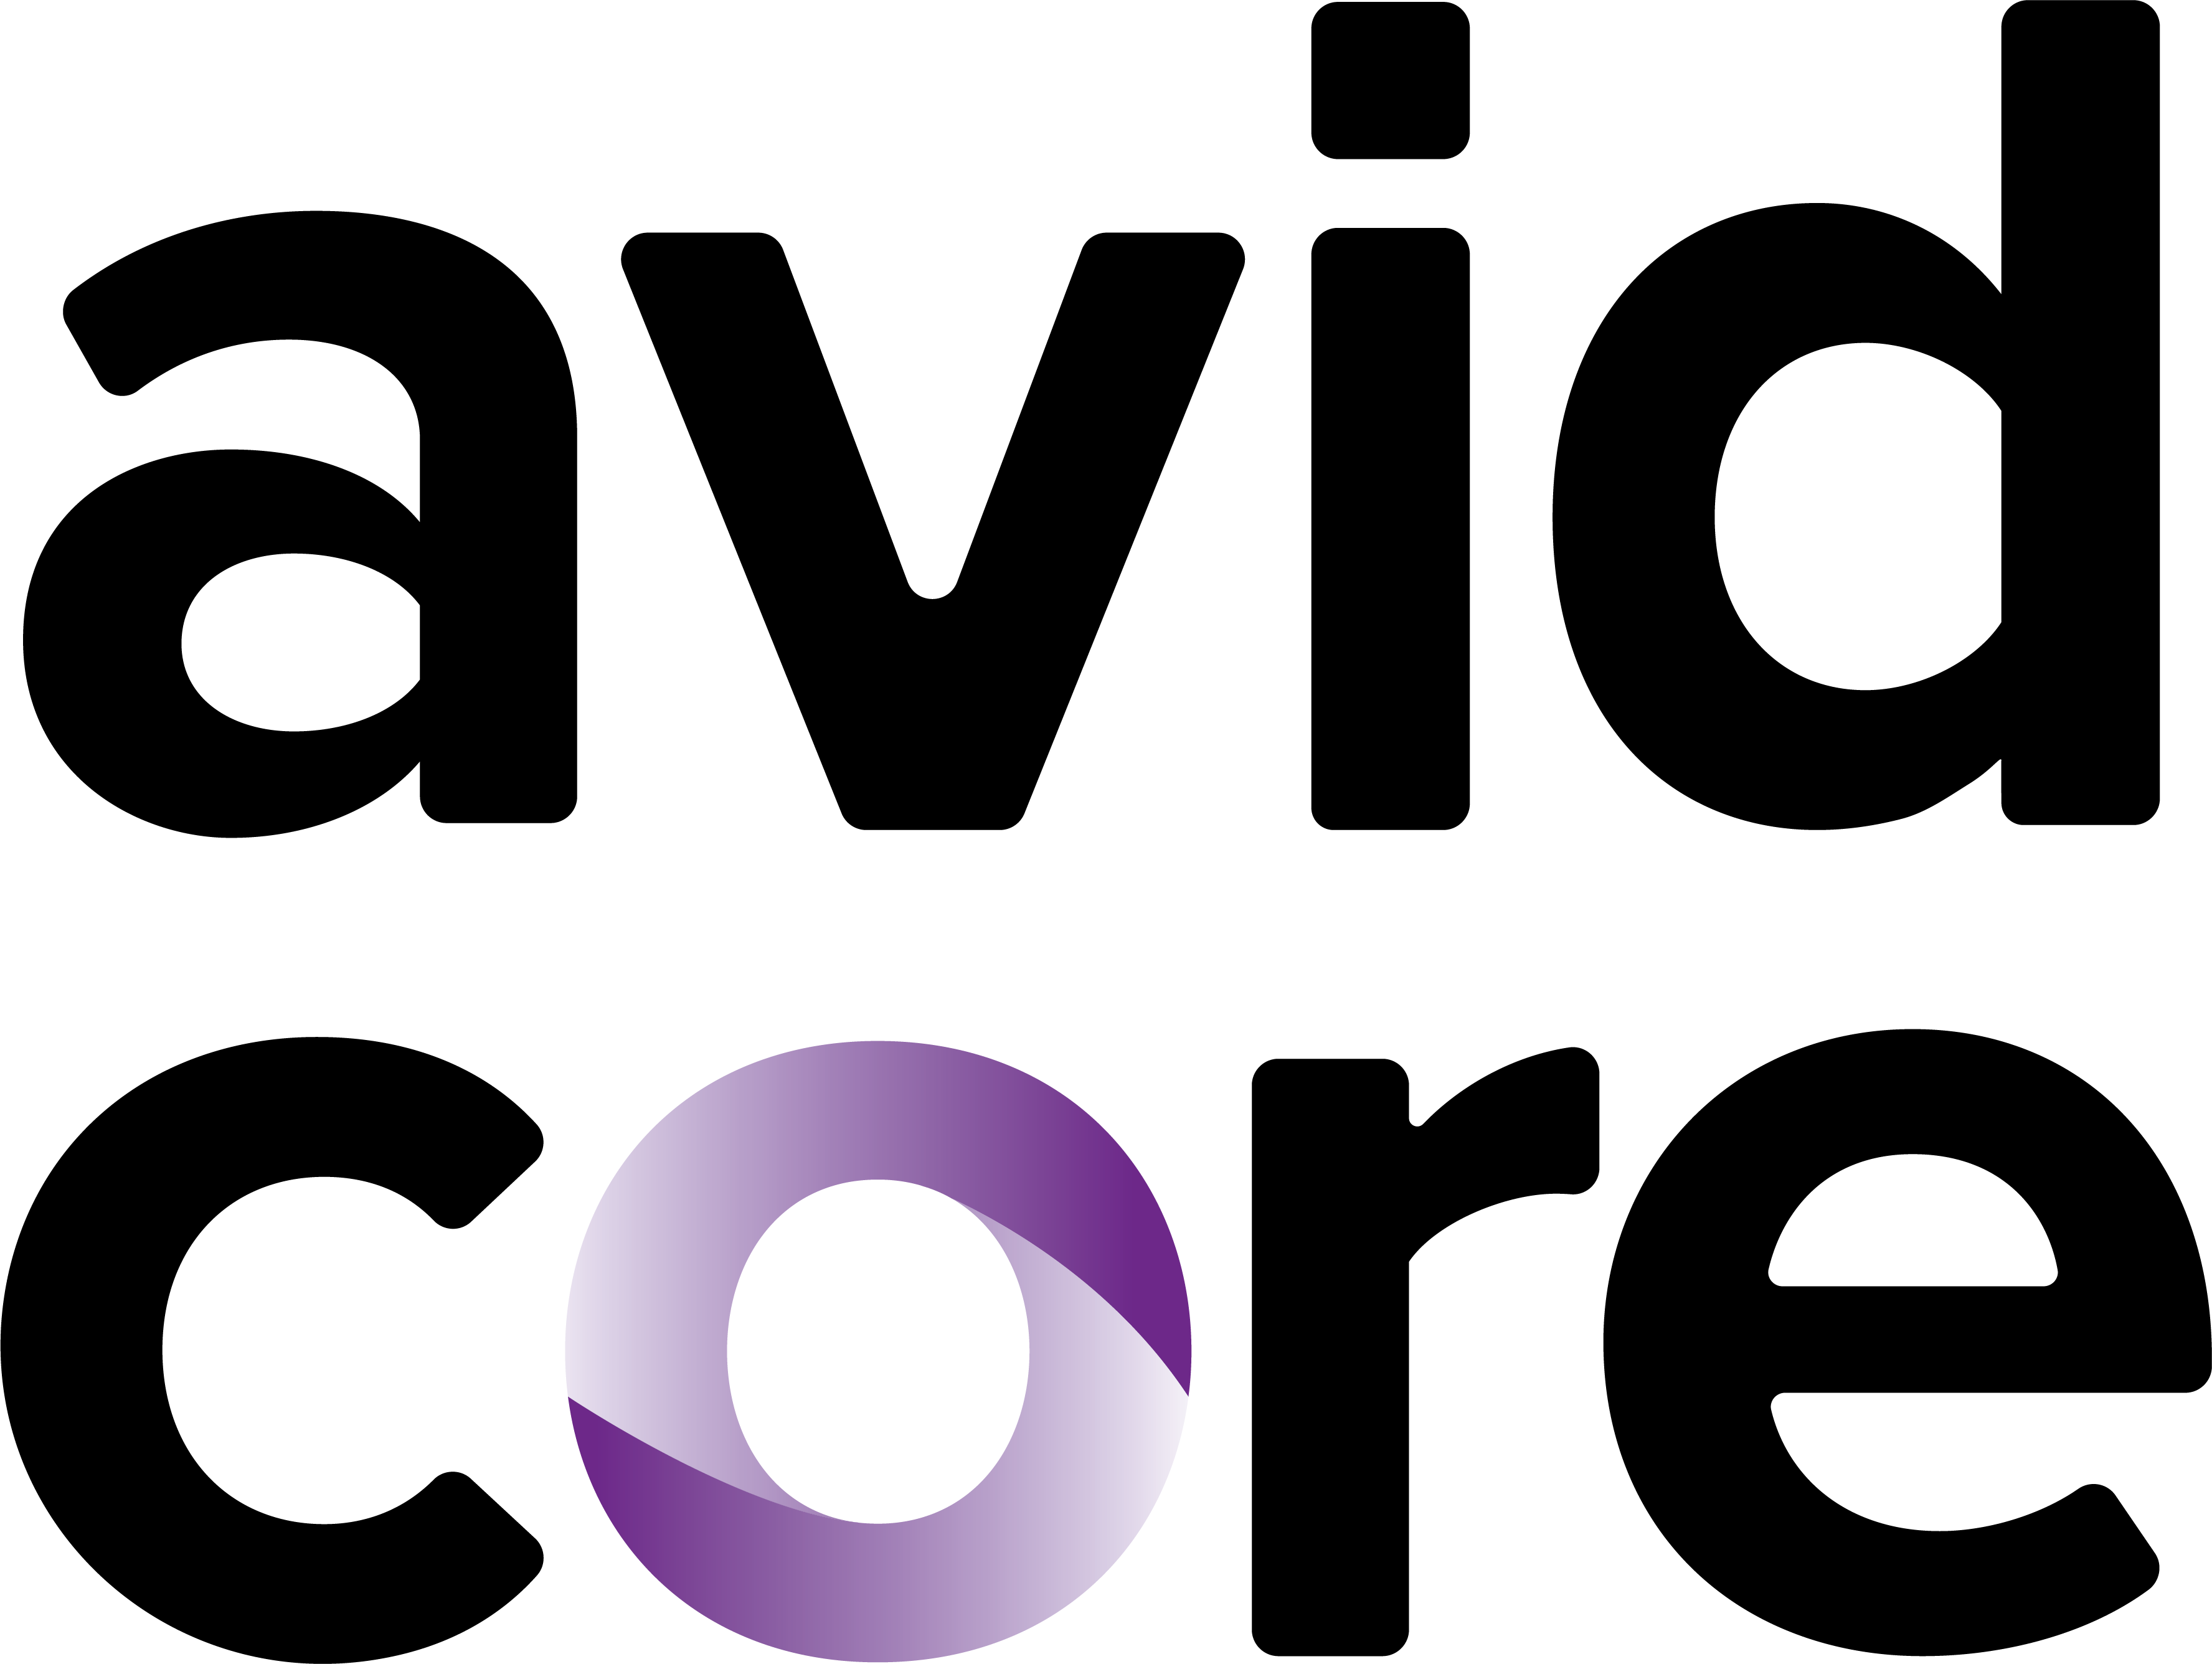 avid logo